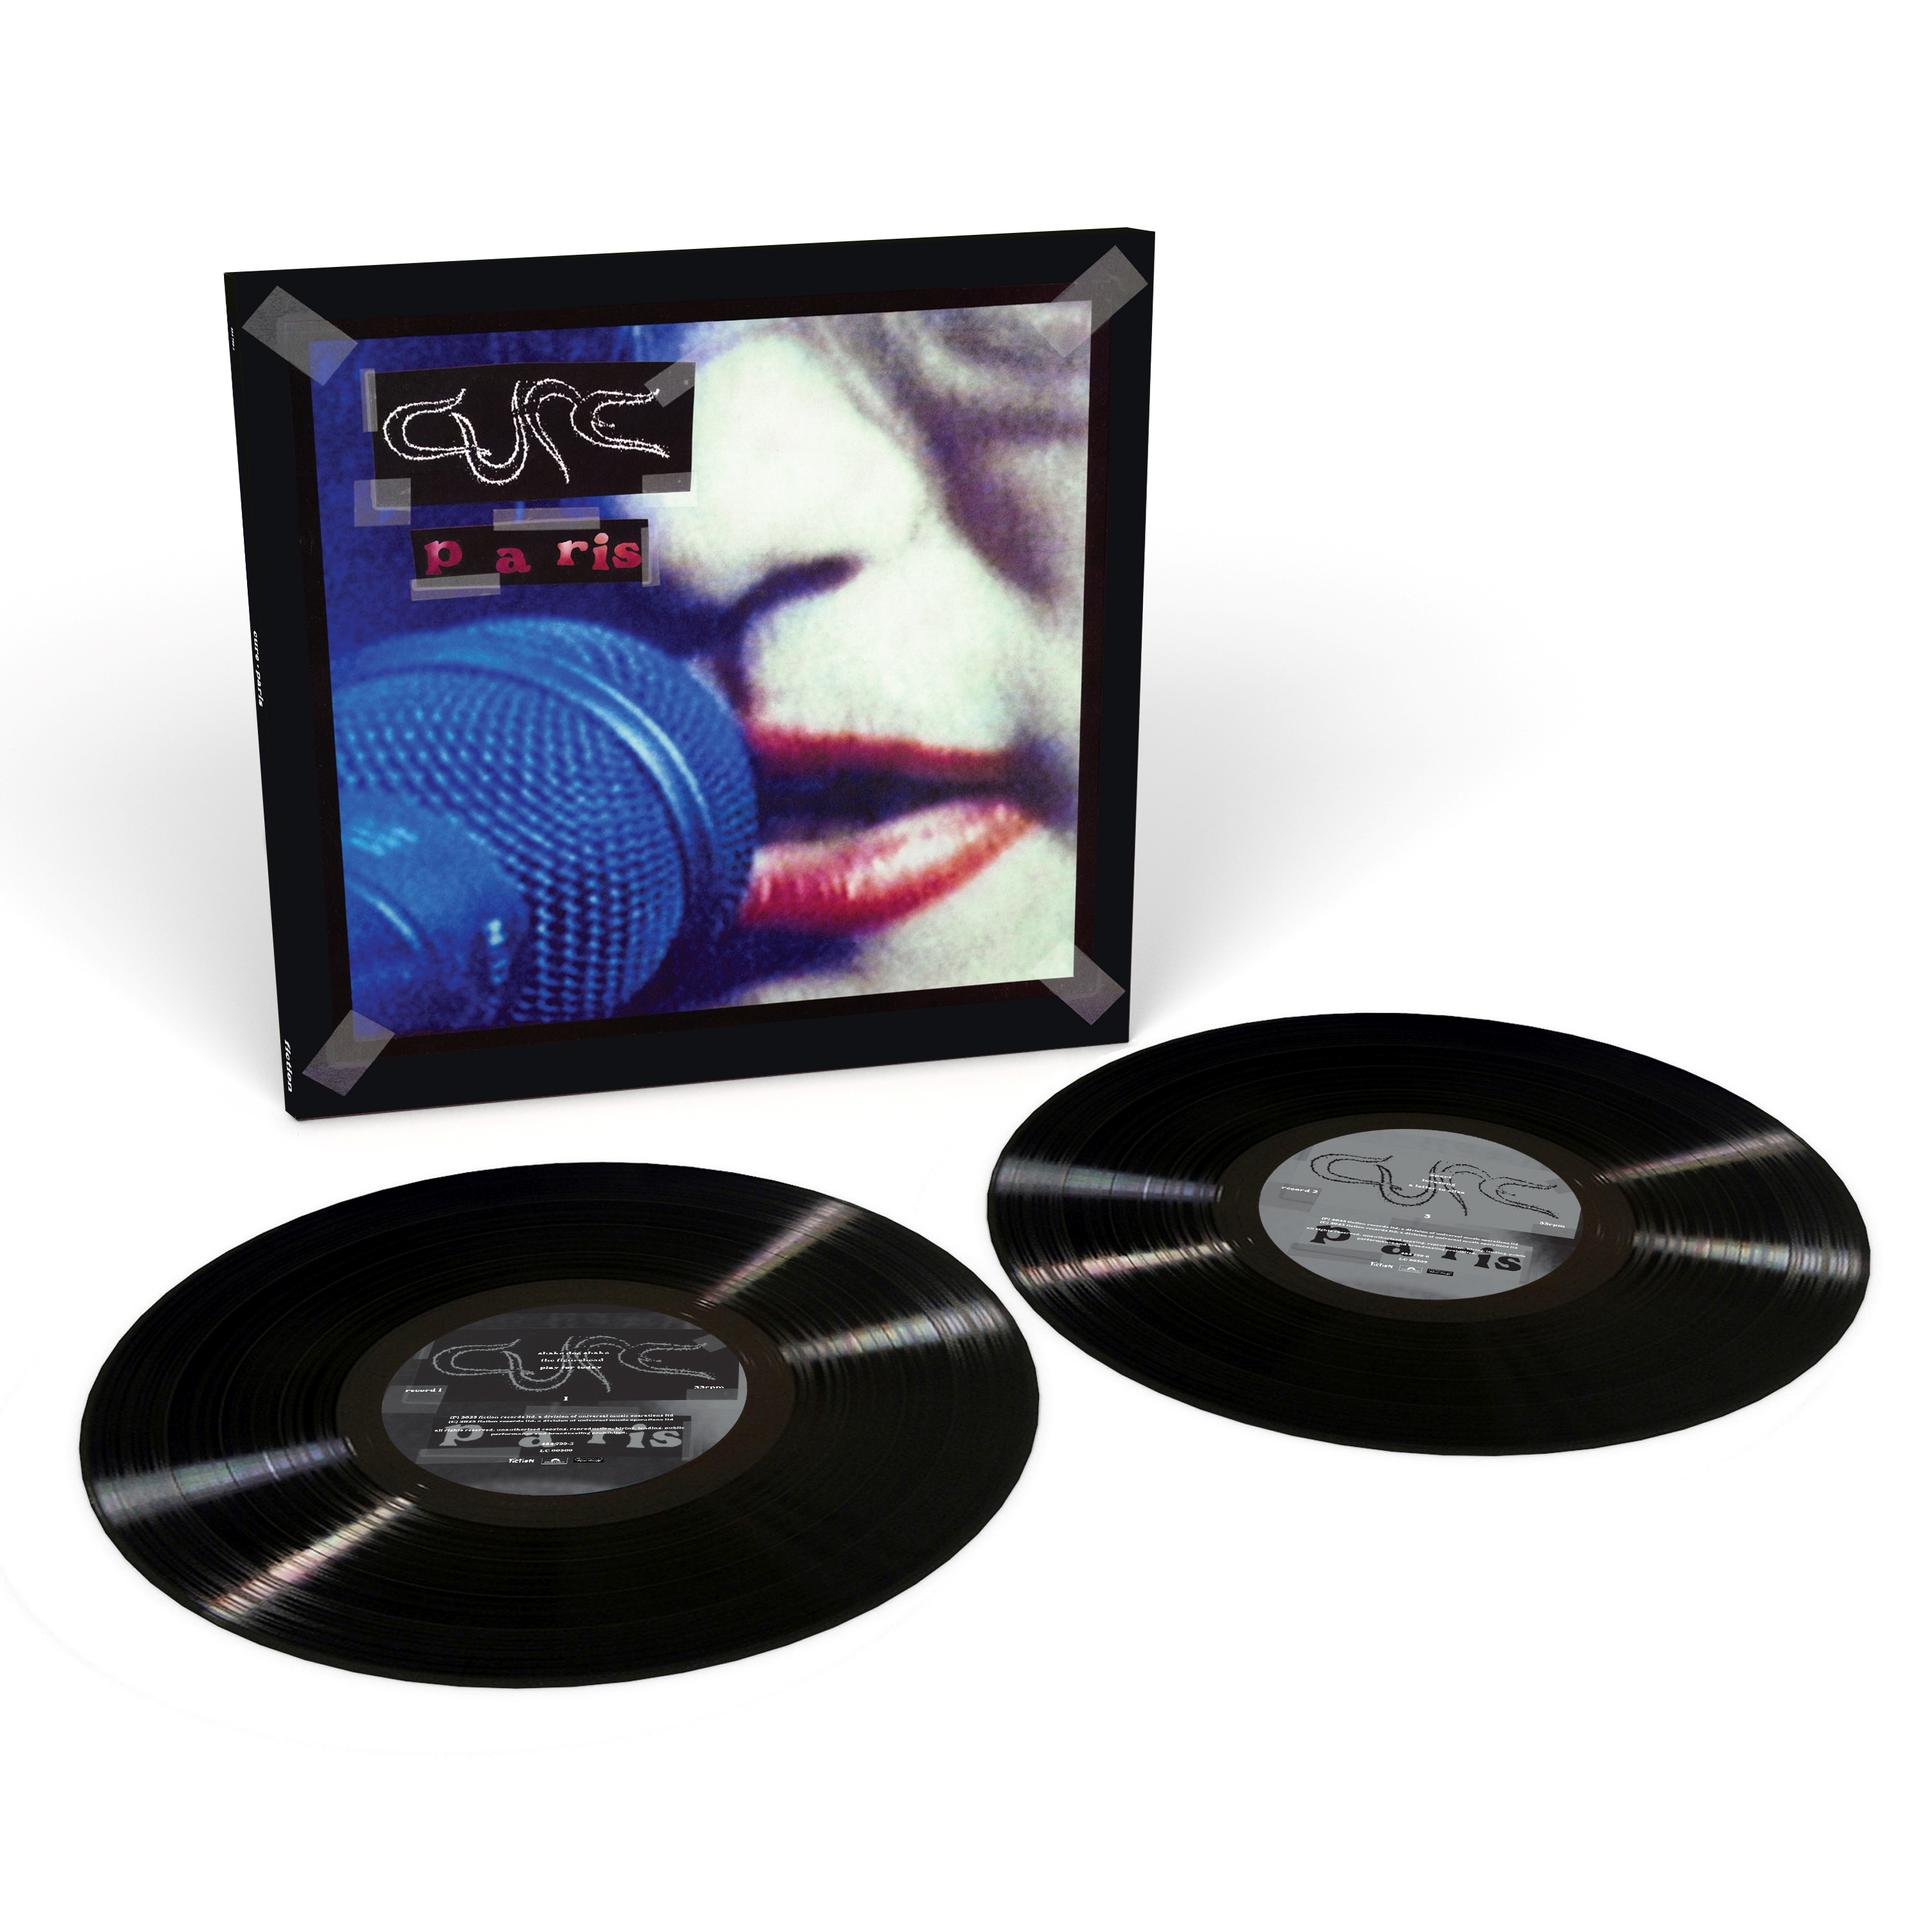 The Cure - Paris (Vinyl LP (nagylemez))